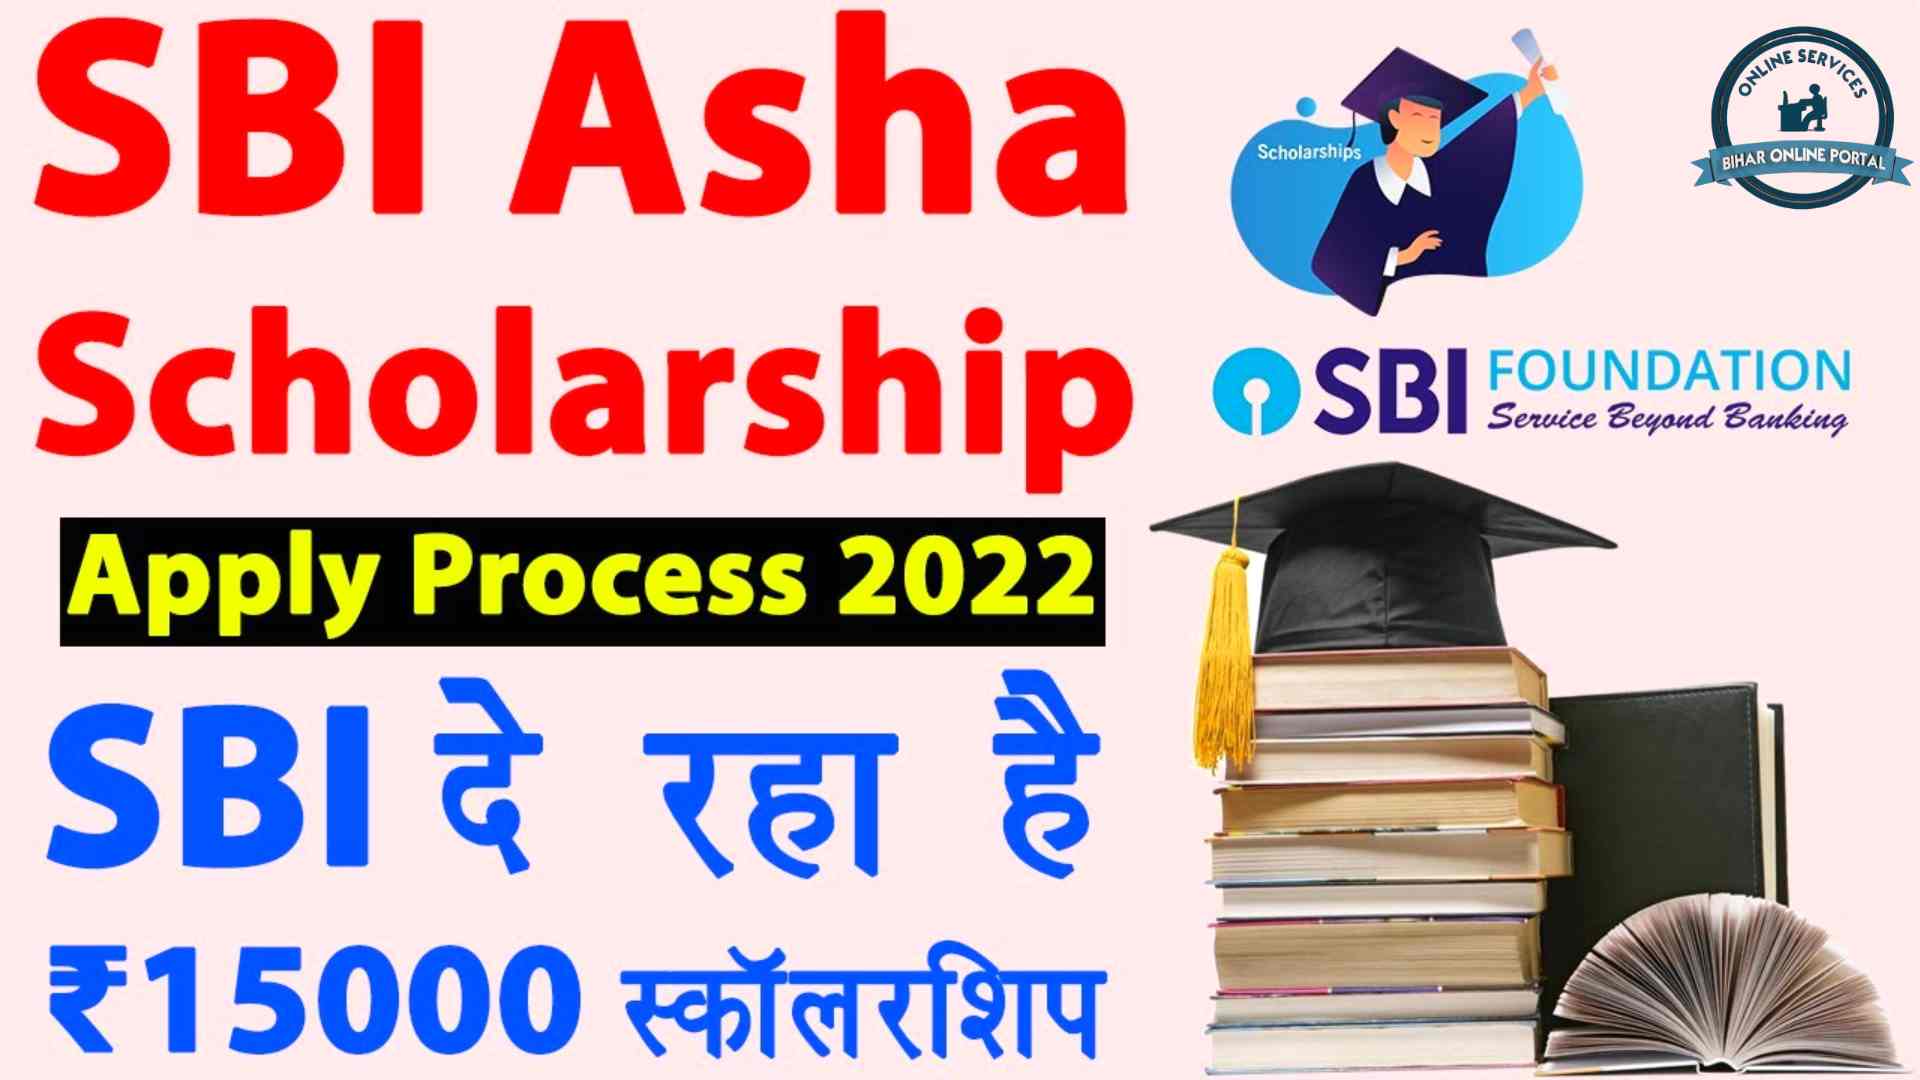 SBI Asha Scholarship Program 2022